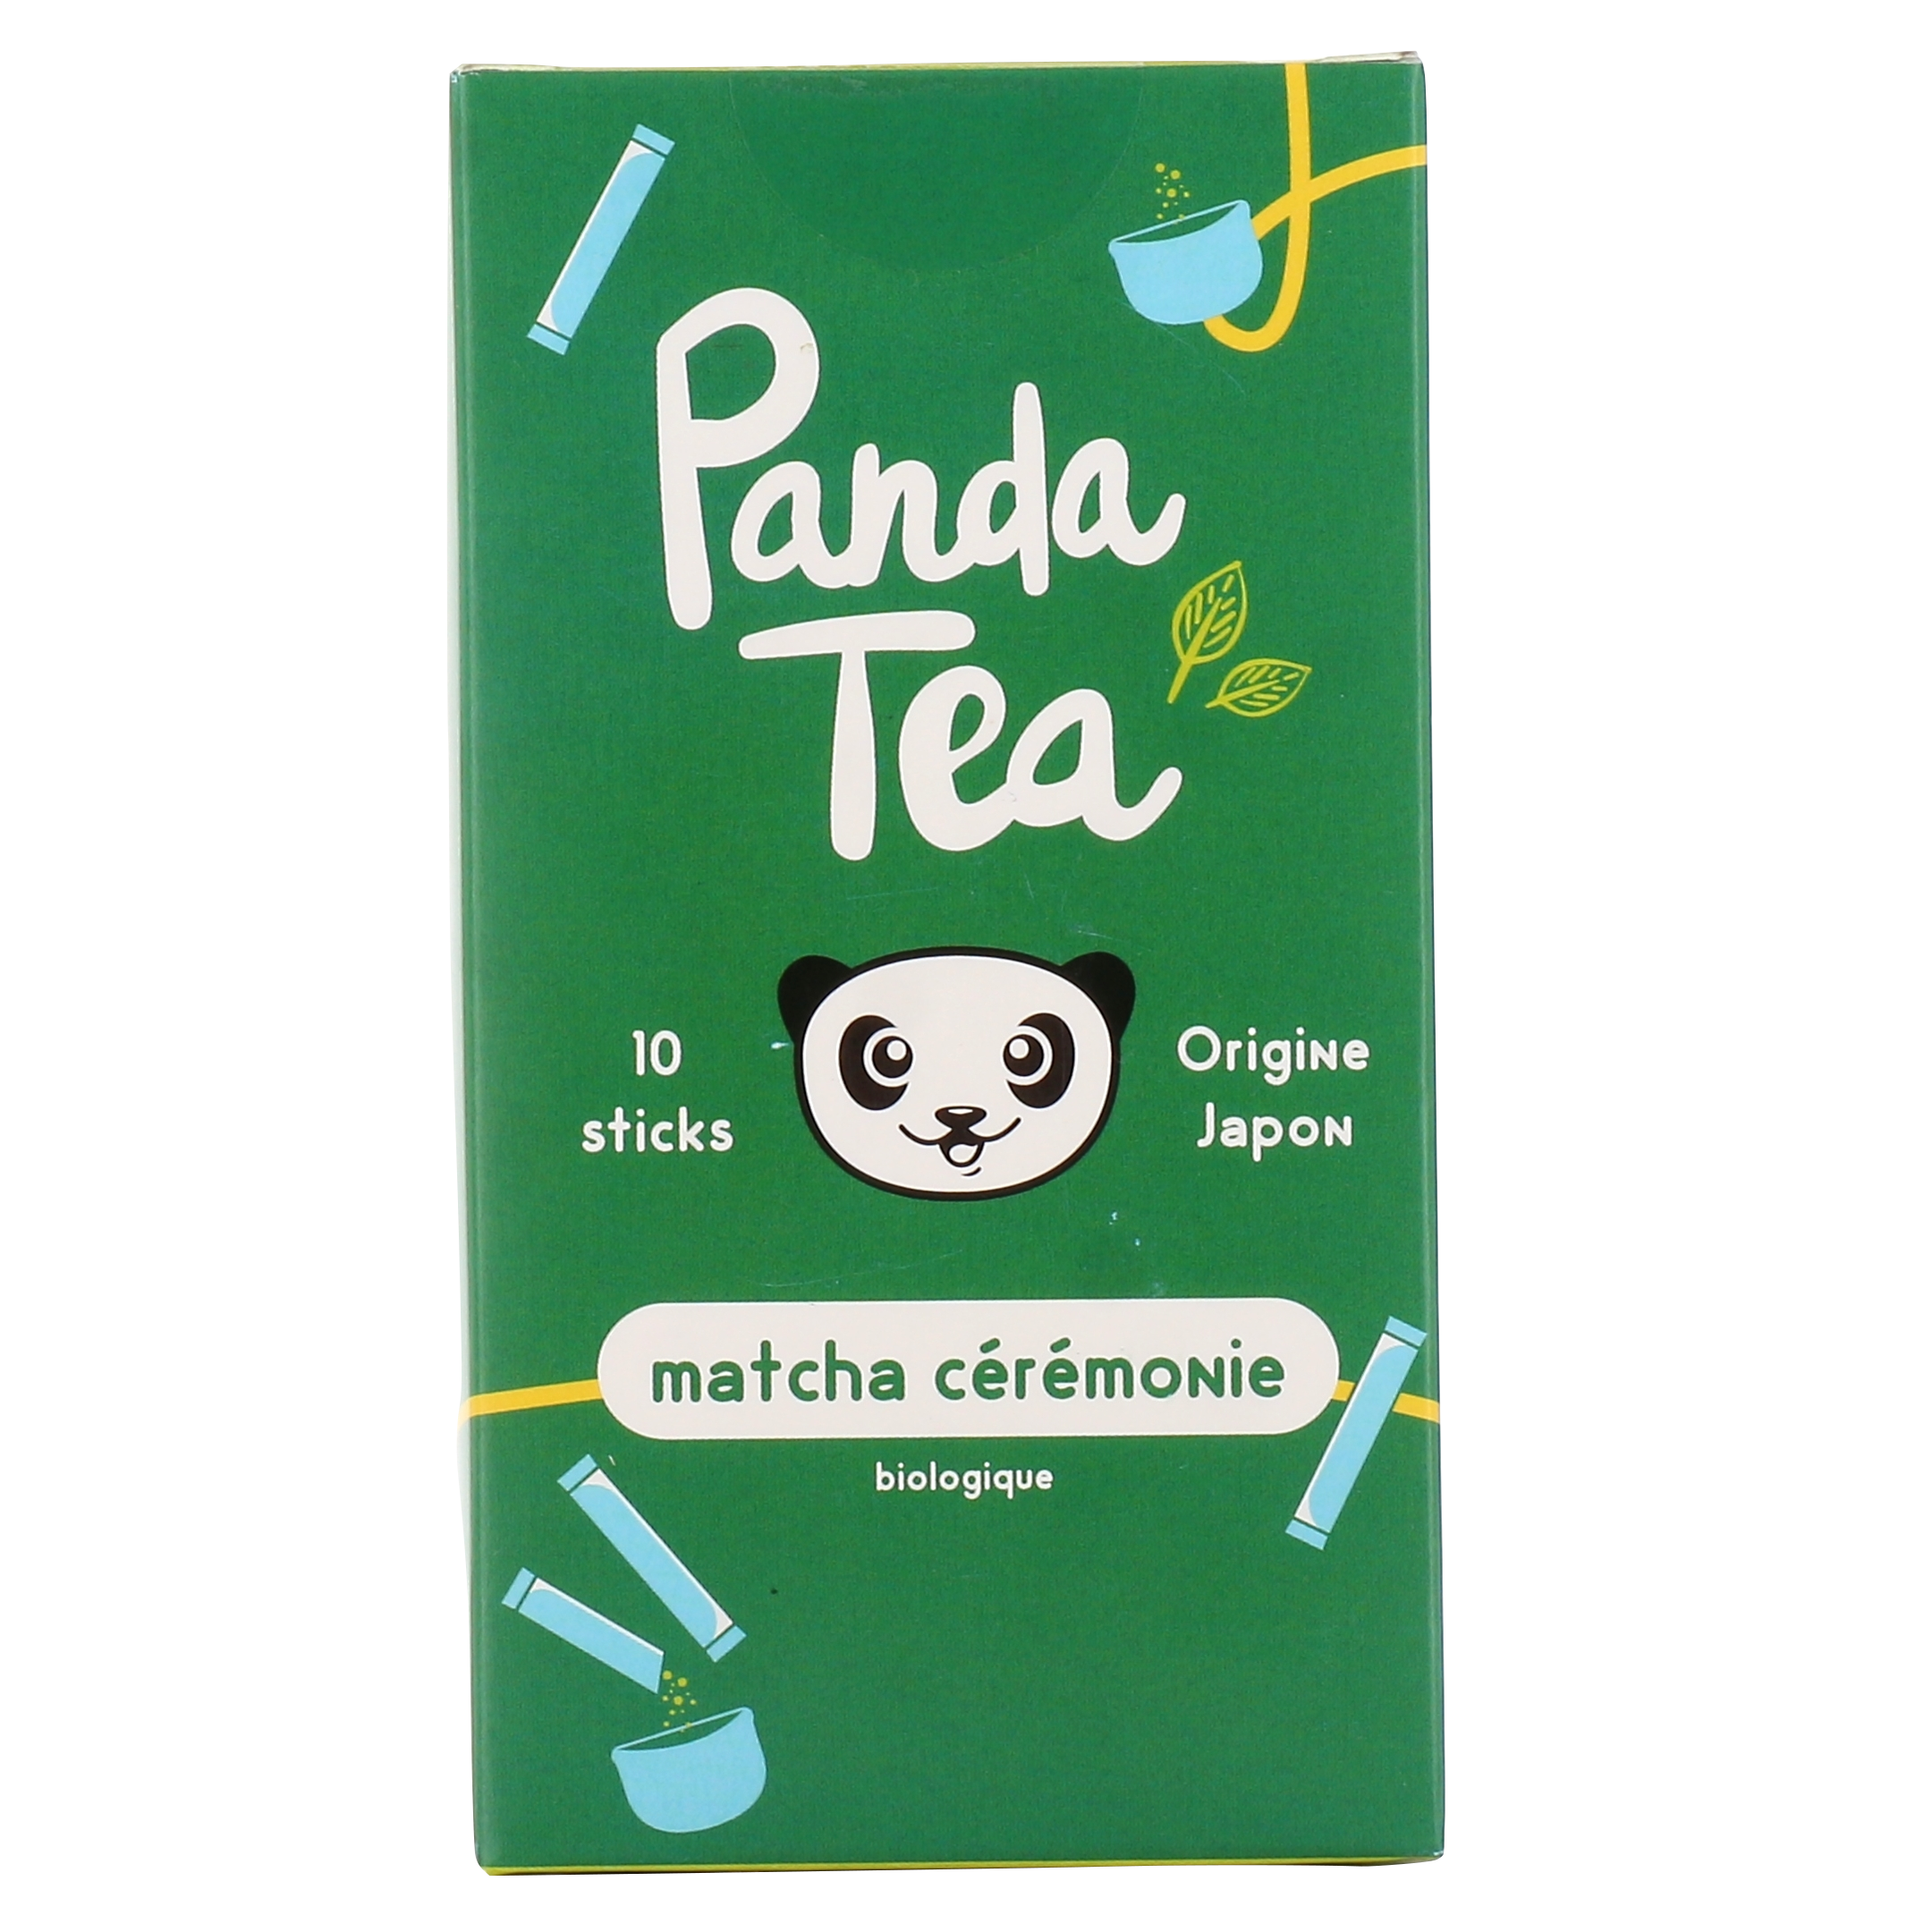 Panda Tea Matcha Cérémonie, 10 sticks